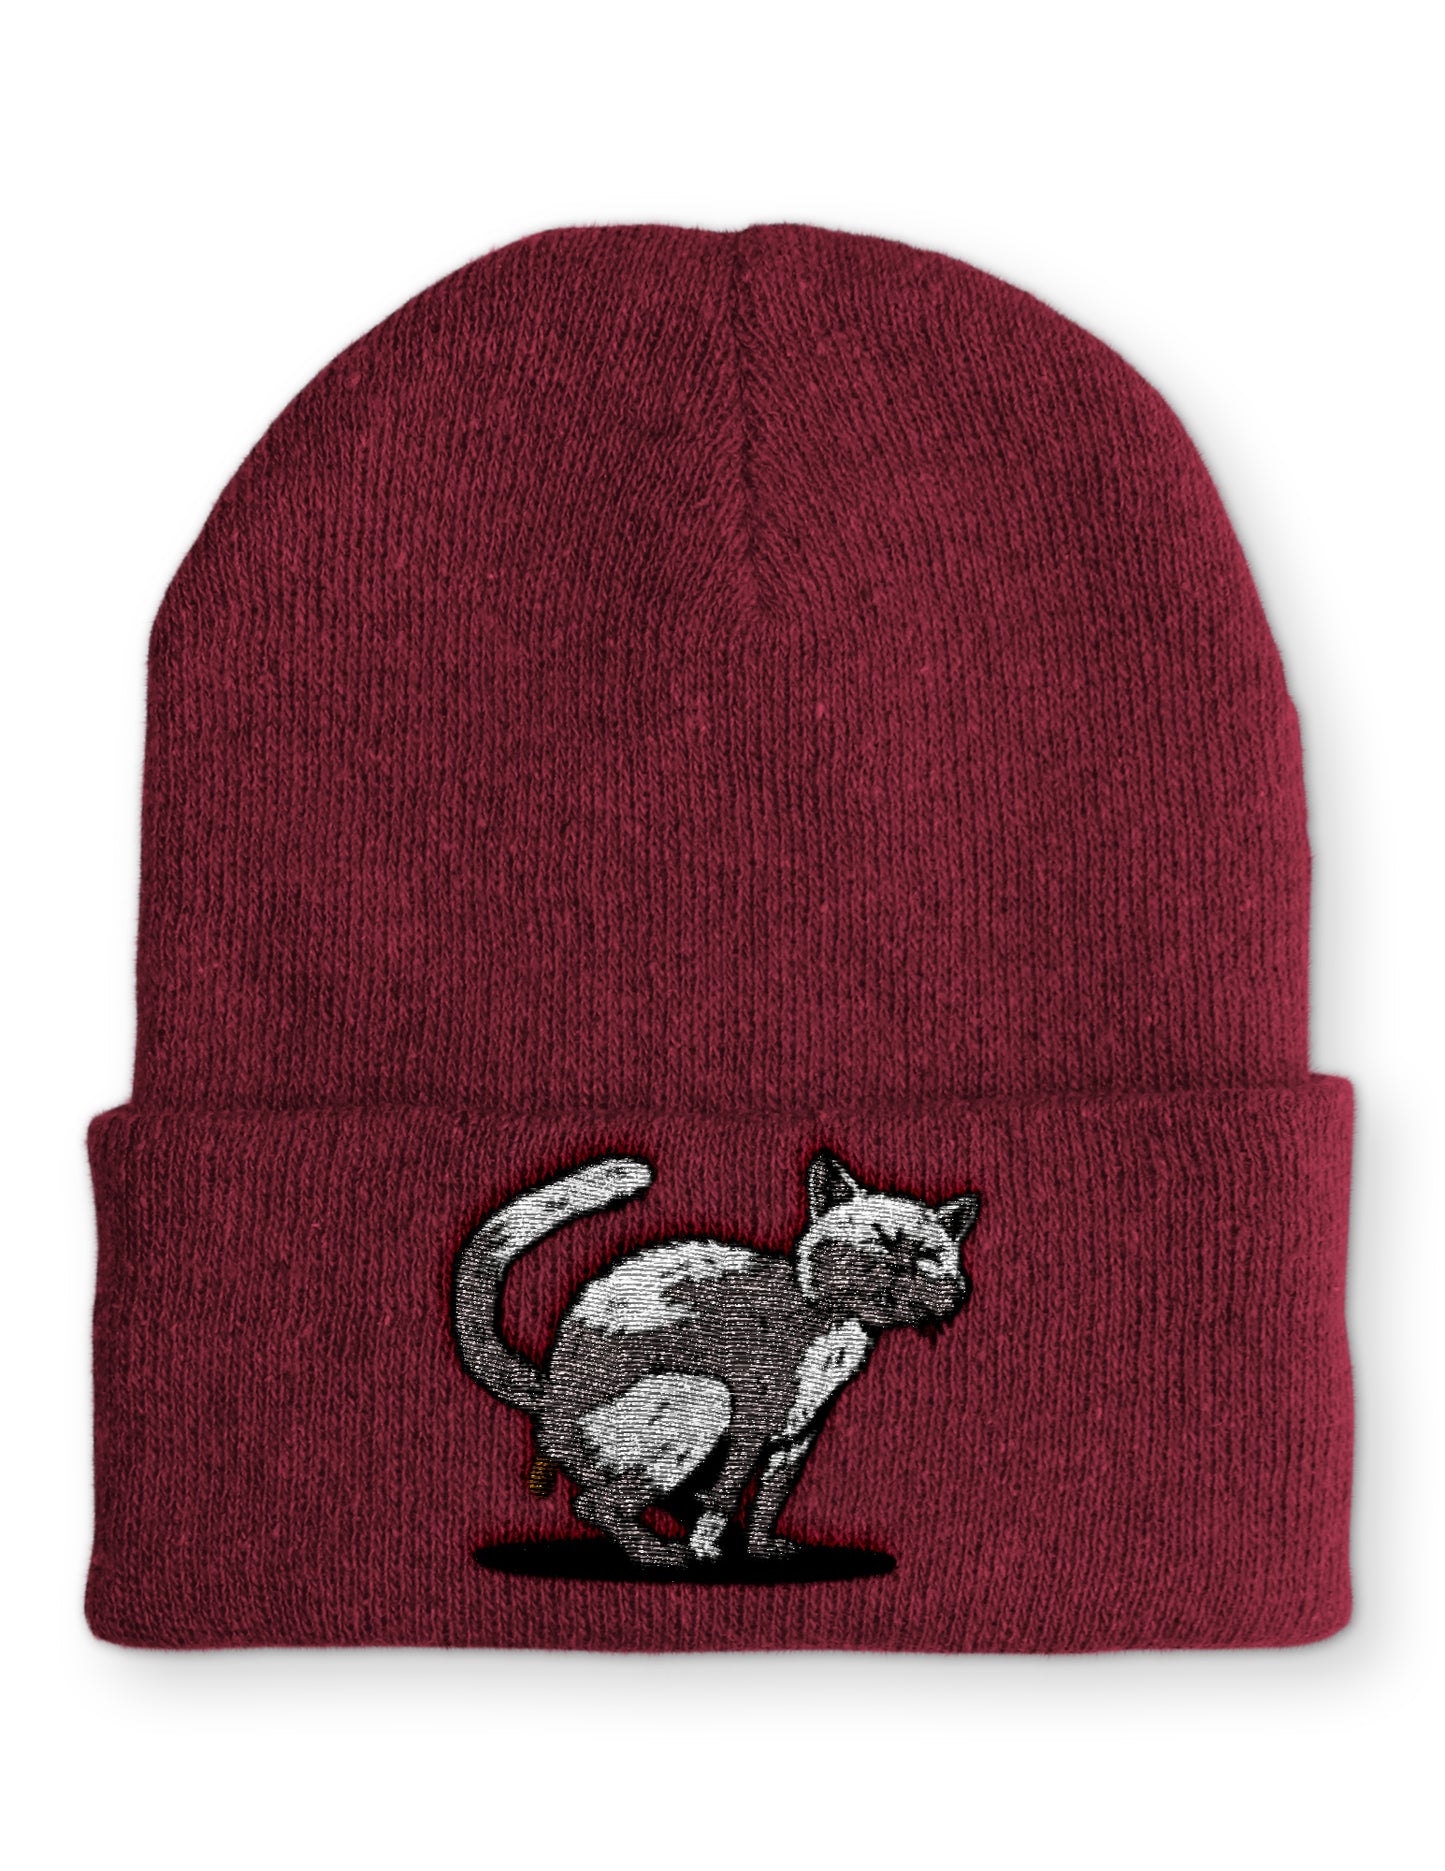 Mütze Kackende Katze